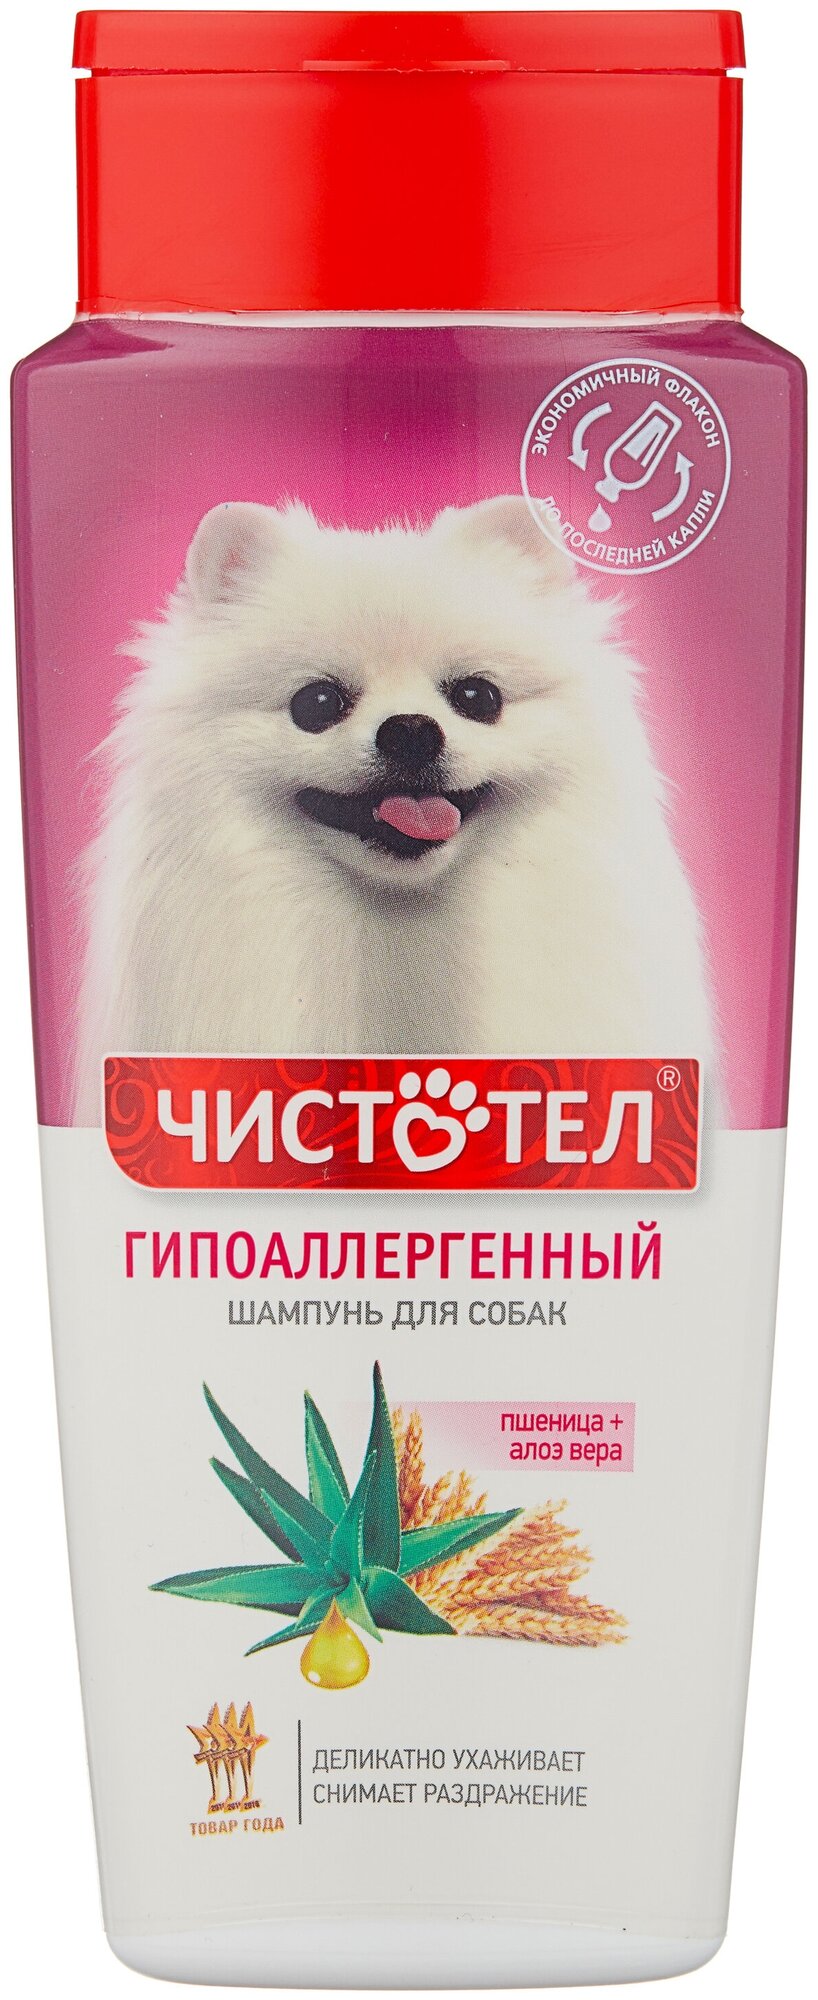 Шампунь ЧИСТОТЕЛ гипоаллергенный для собак — купить по выгодной цене на Яндекс Маркете